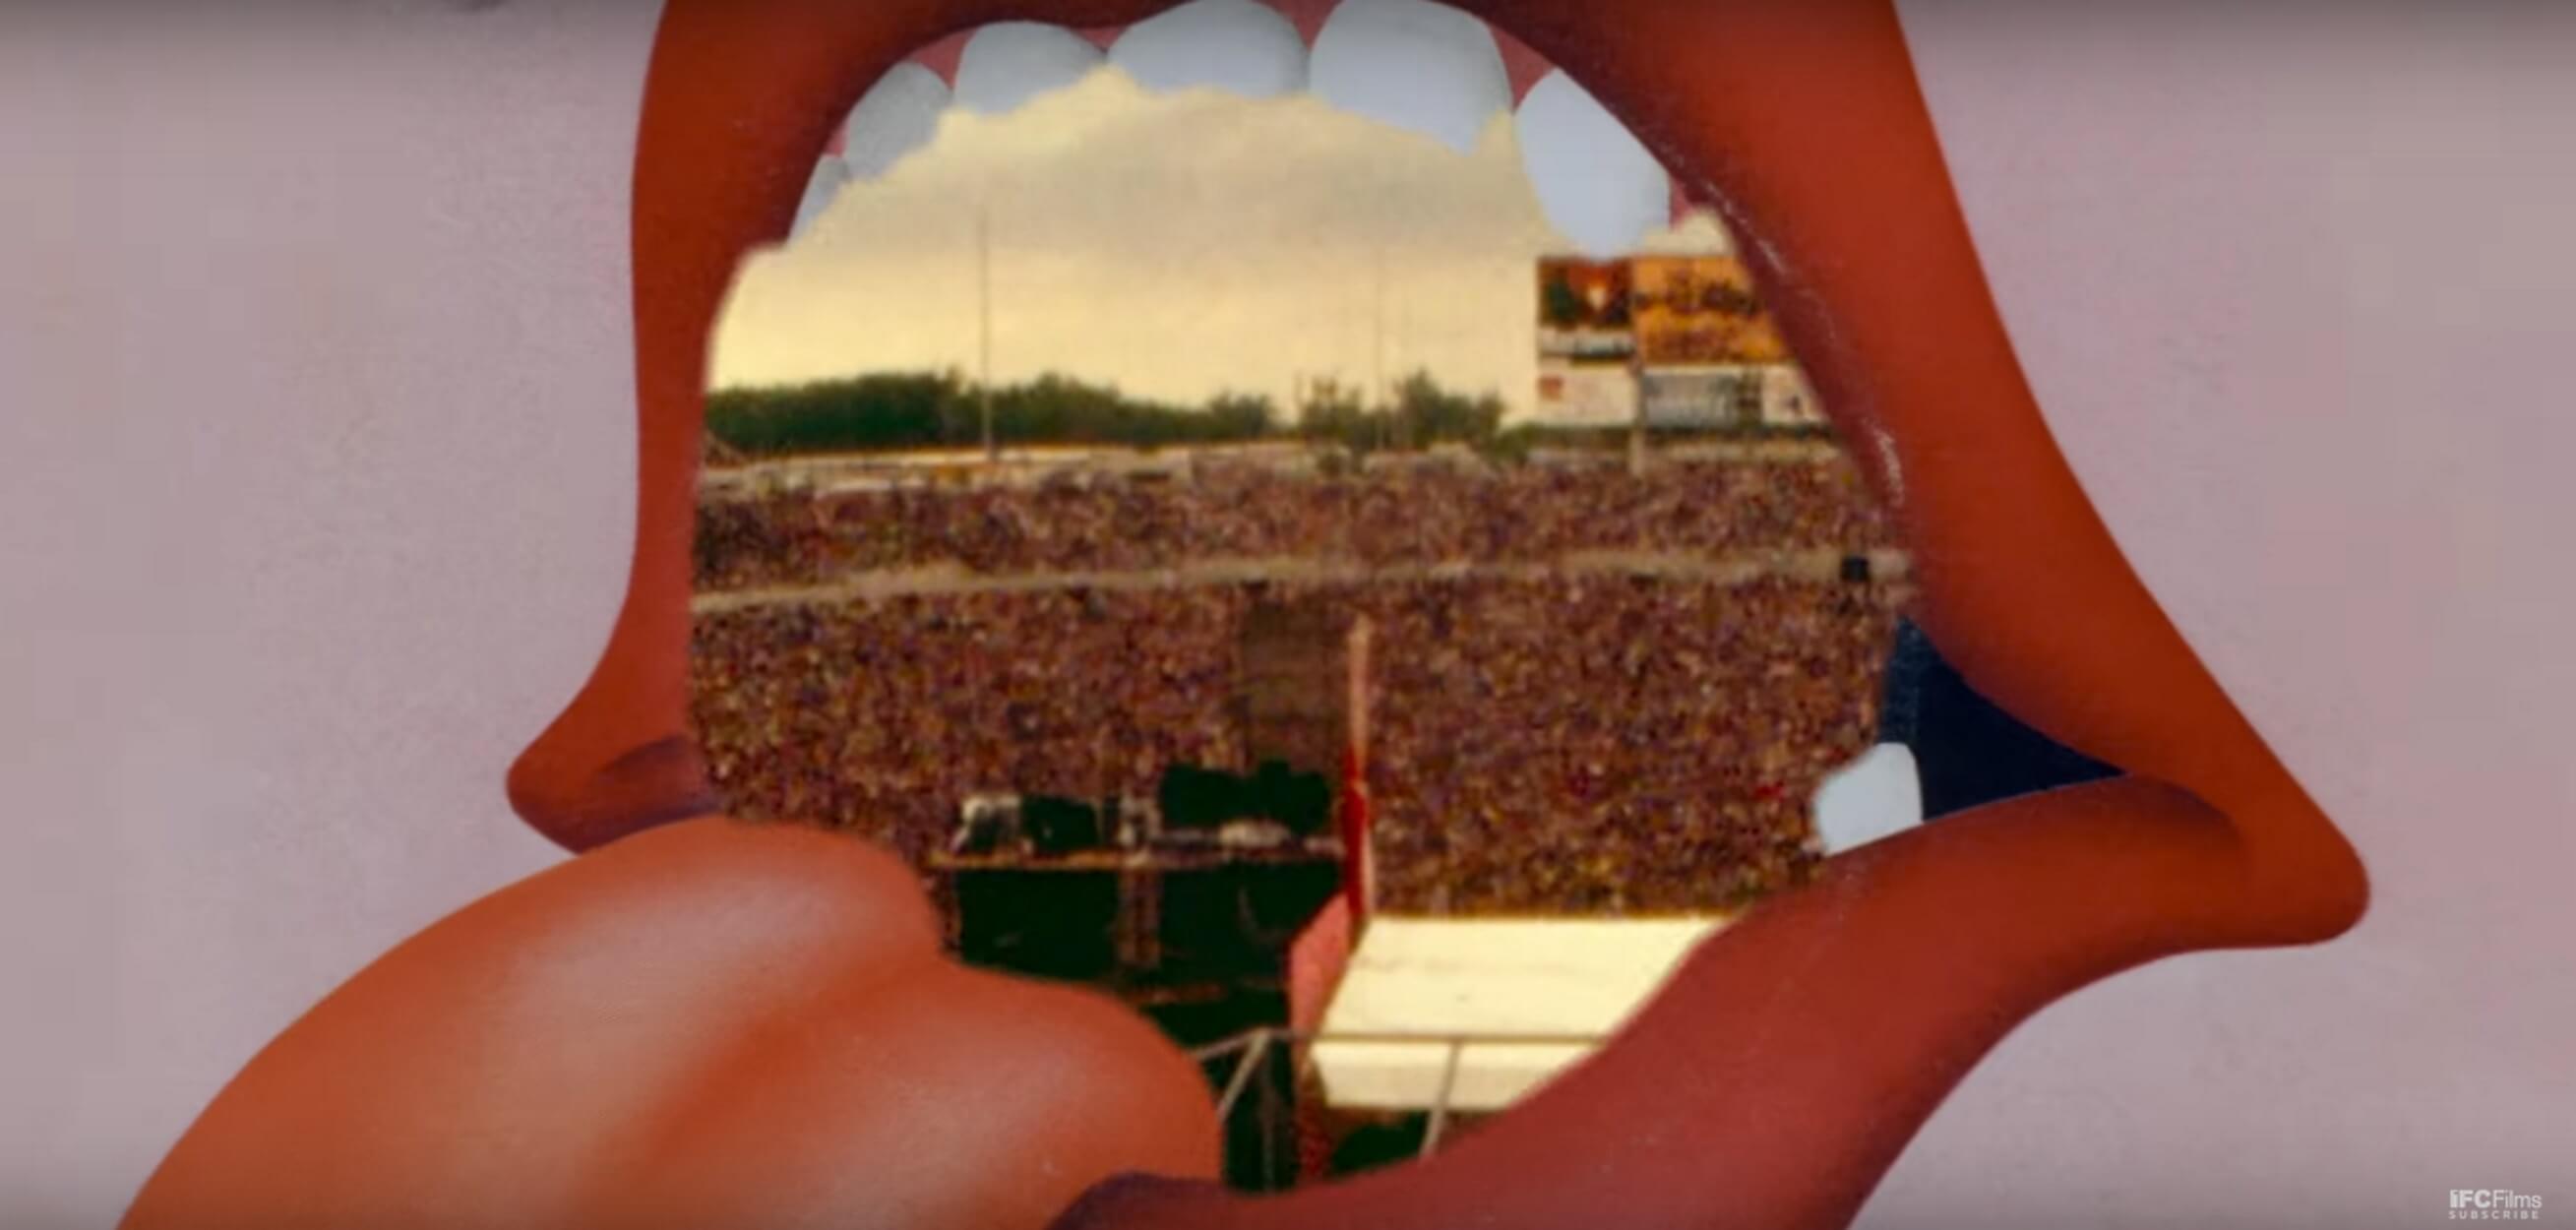 Ντοκιμαντέρ για τη ζωή και την καριέρα του “Ήσυχου” των Rolling Stones! video